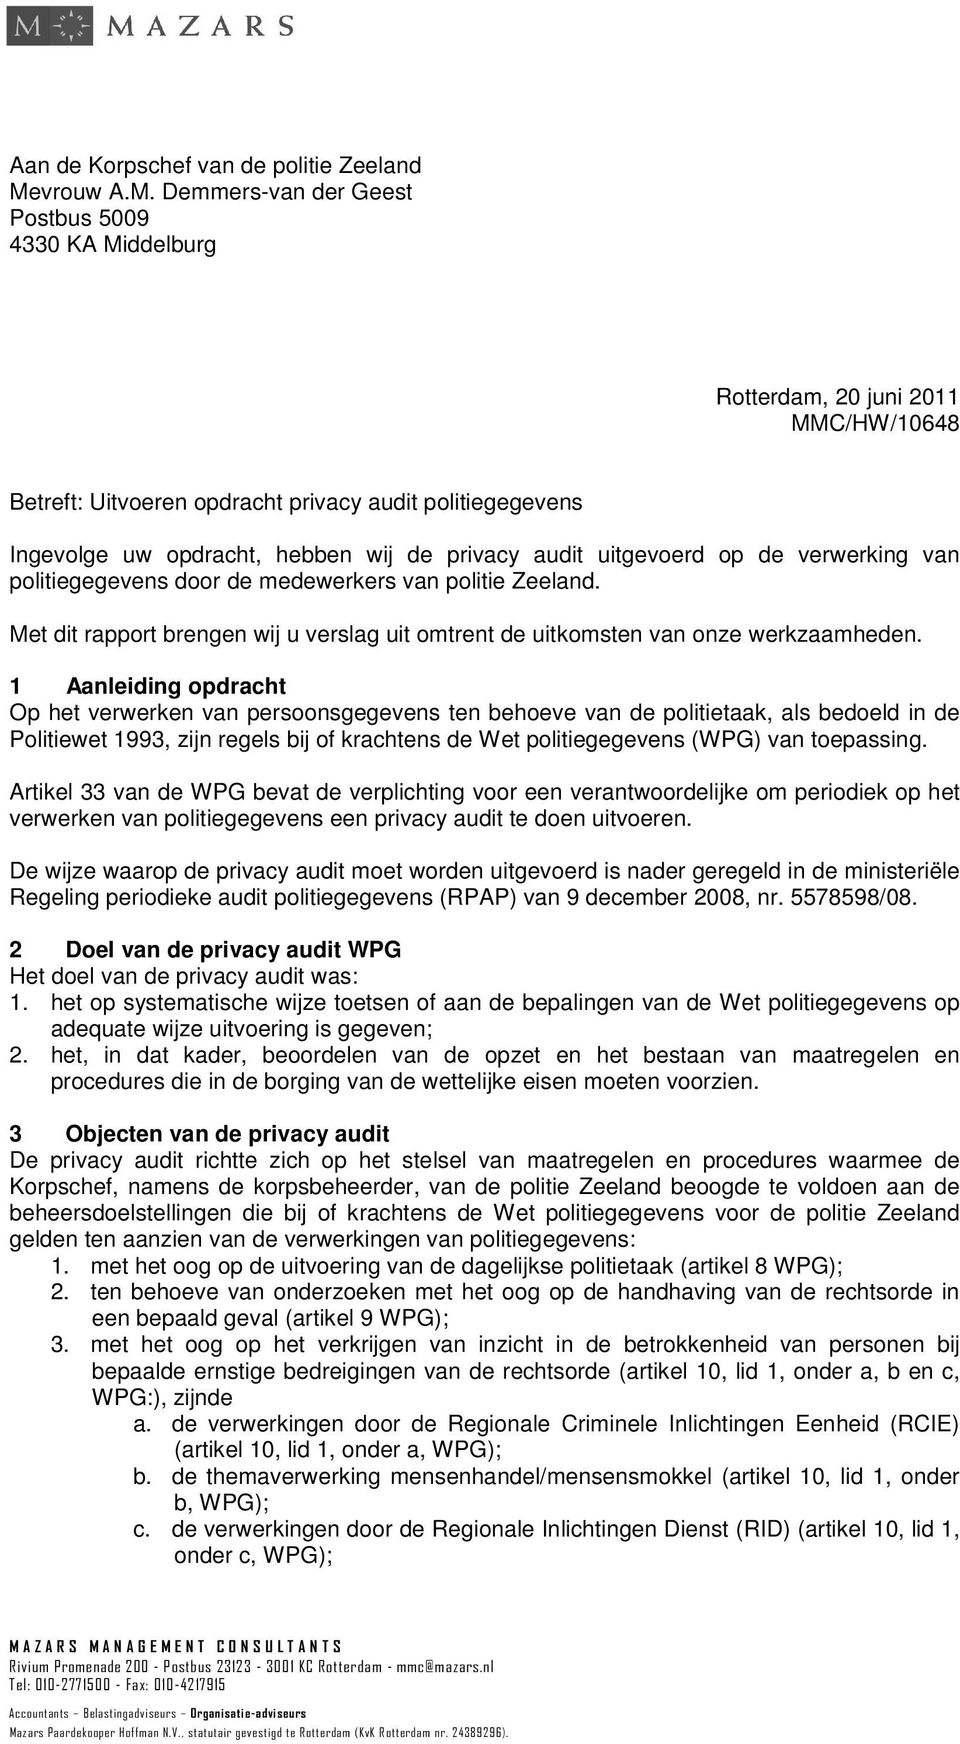 Demmers-van der Geest Postbus 5009 4330 KA Middelburg Rotterdam, 20 juni 2011 MMC/HW/10648 Betreft: Uitvoeren opdracht privacy audit politiegegevens Ingevolge uw opdracht, hebben wij de privacy audit